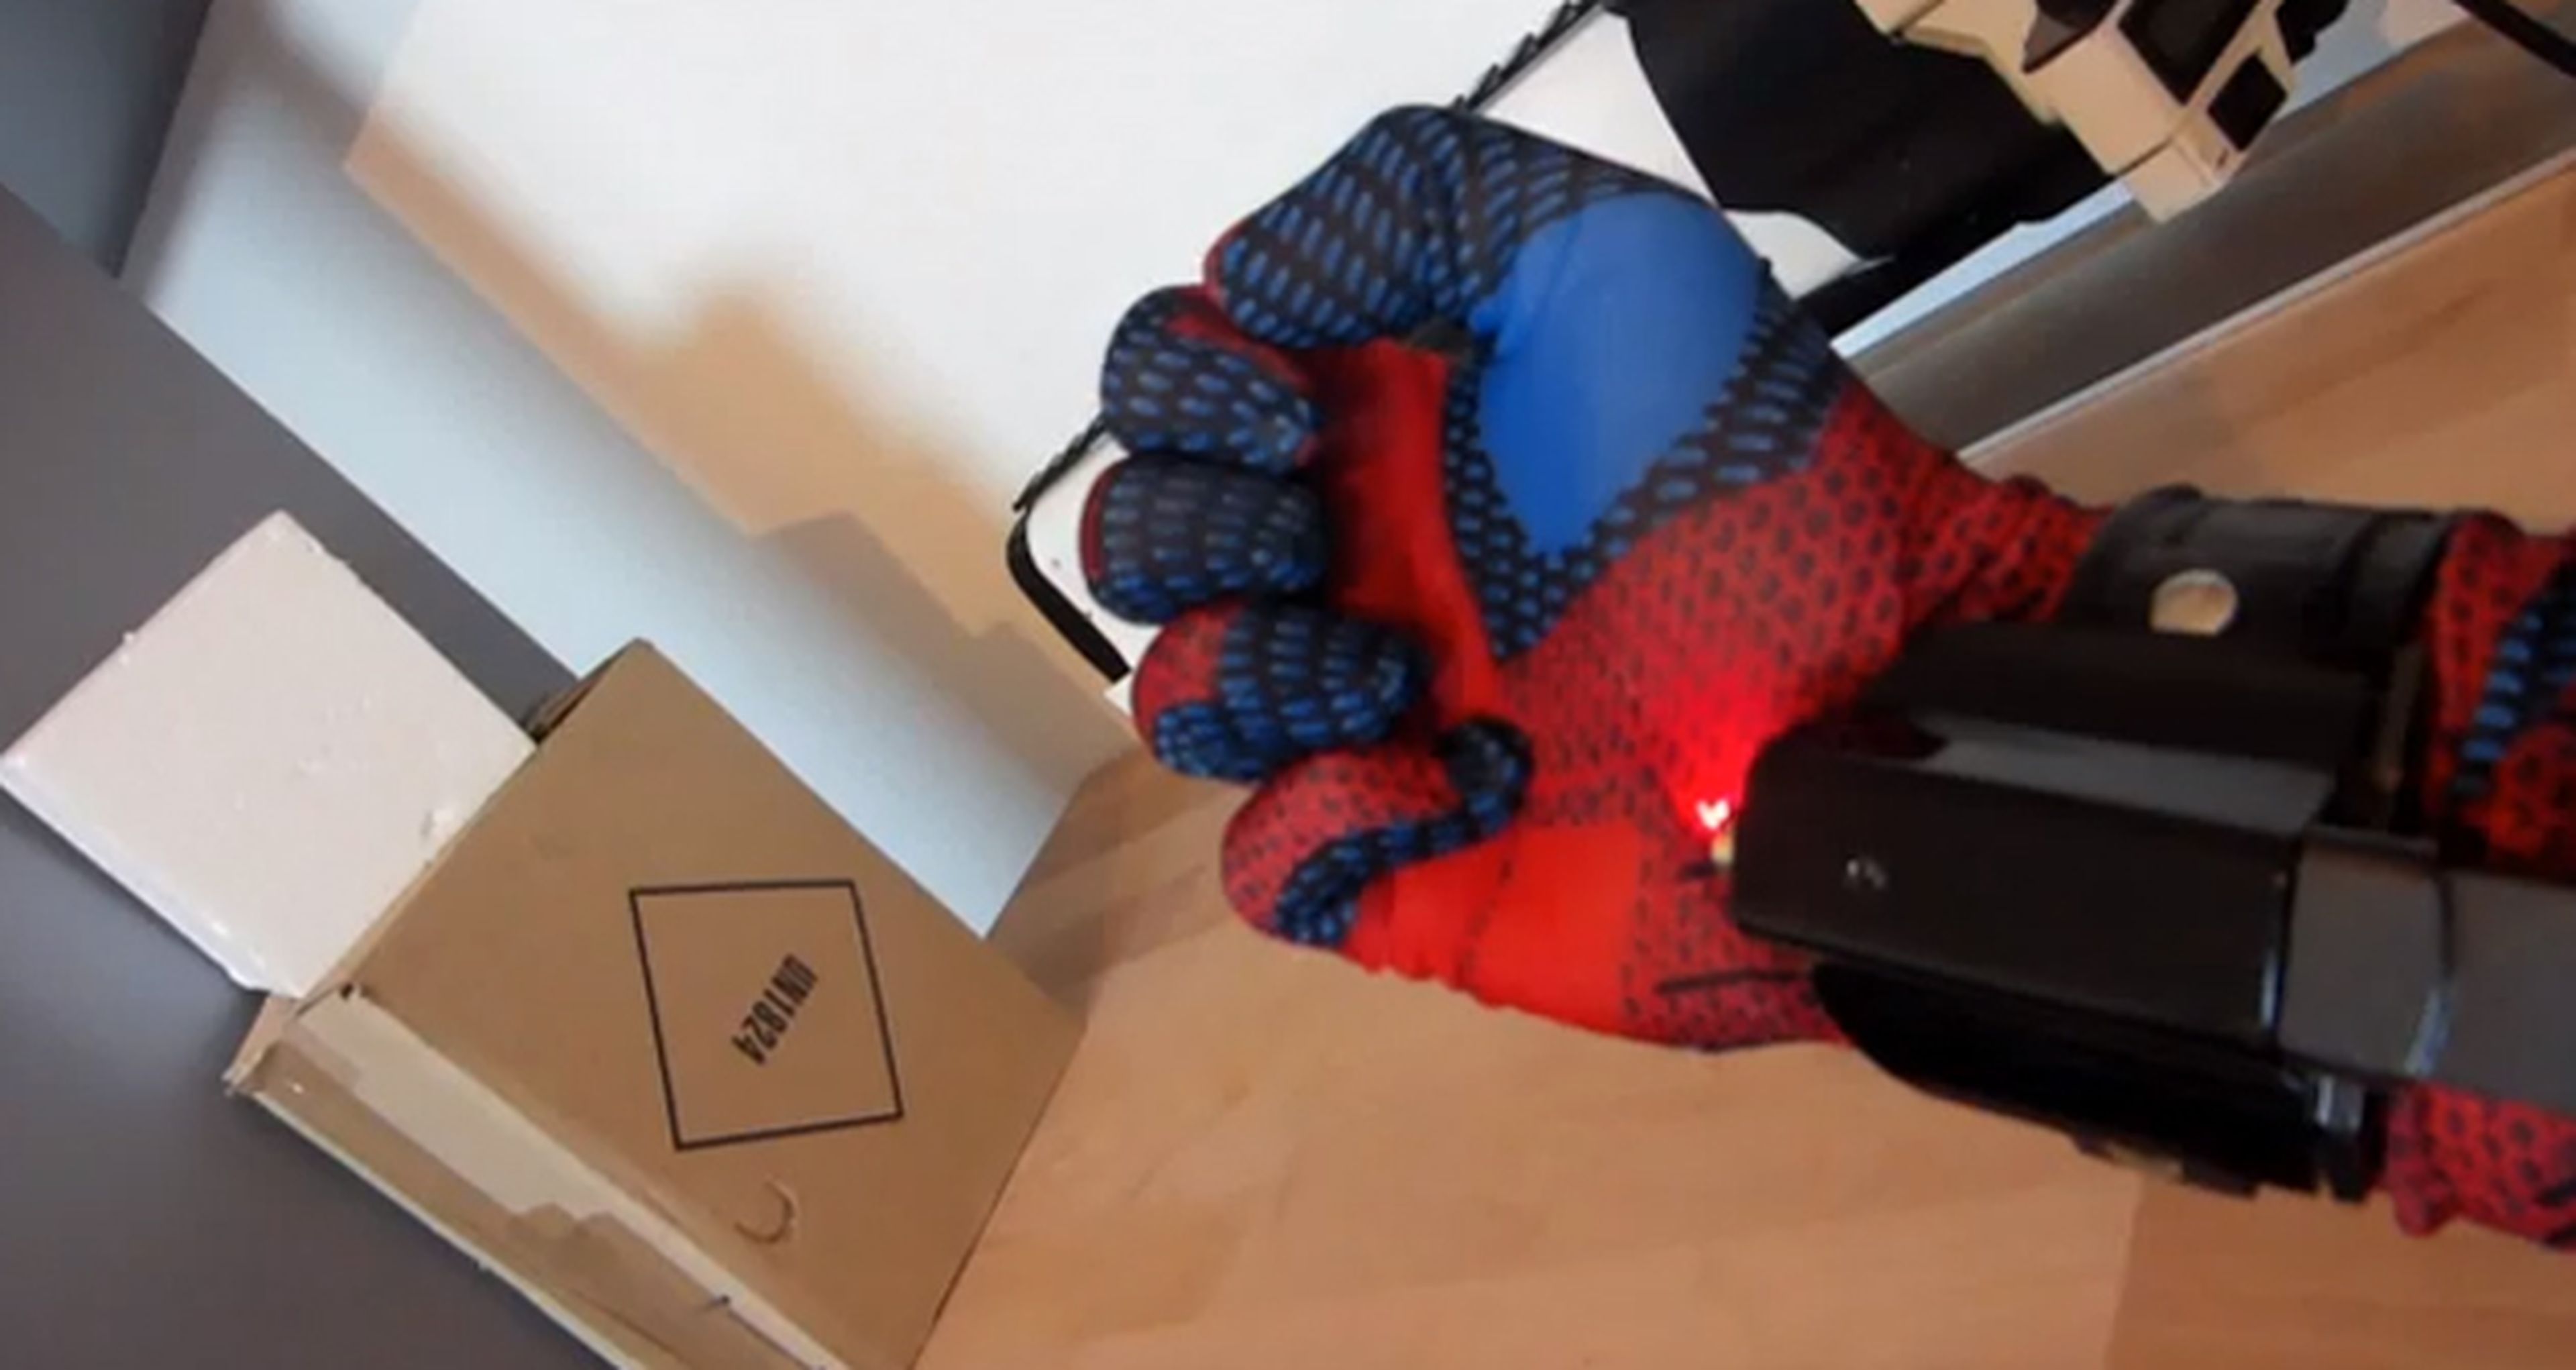 Crean un lanzarredes electromagnético de Spider-man